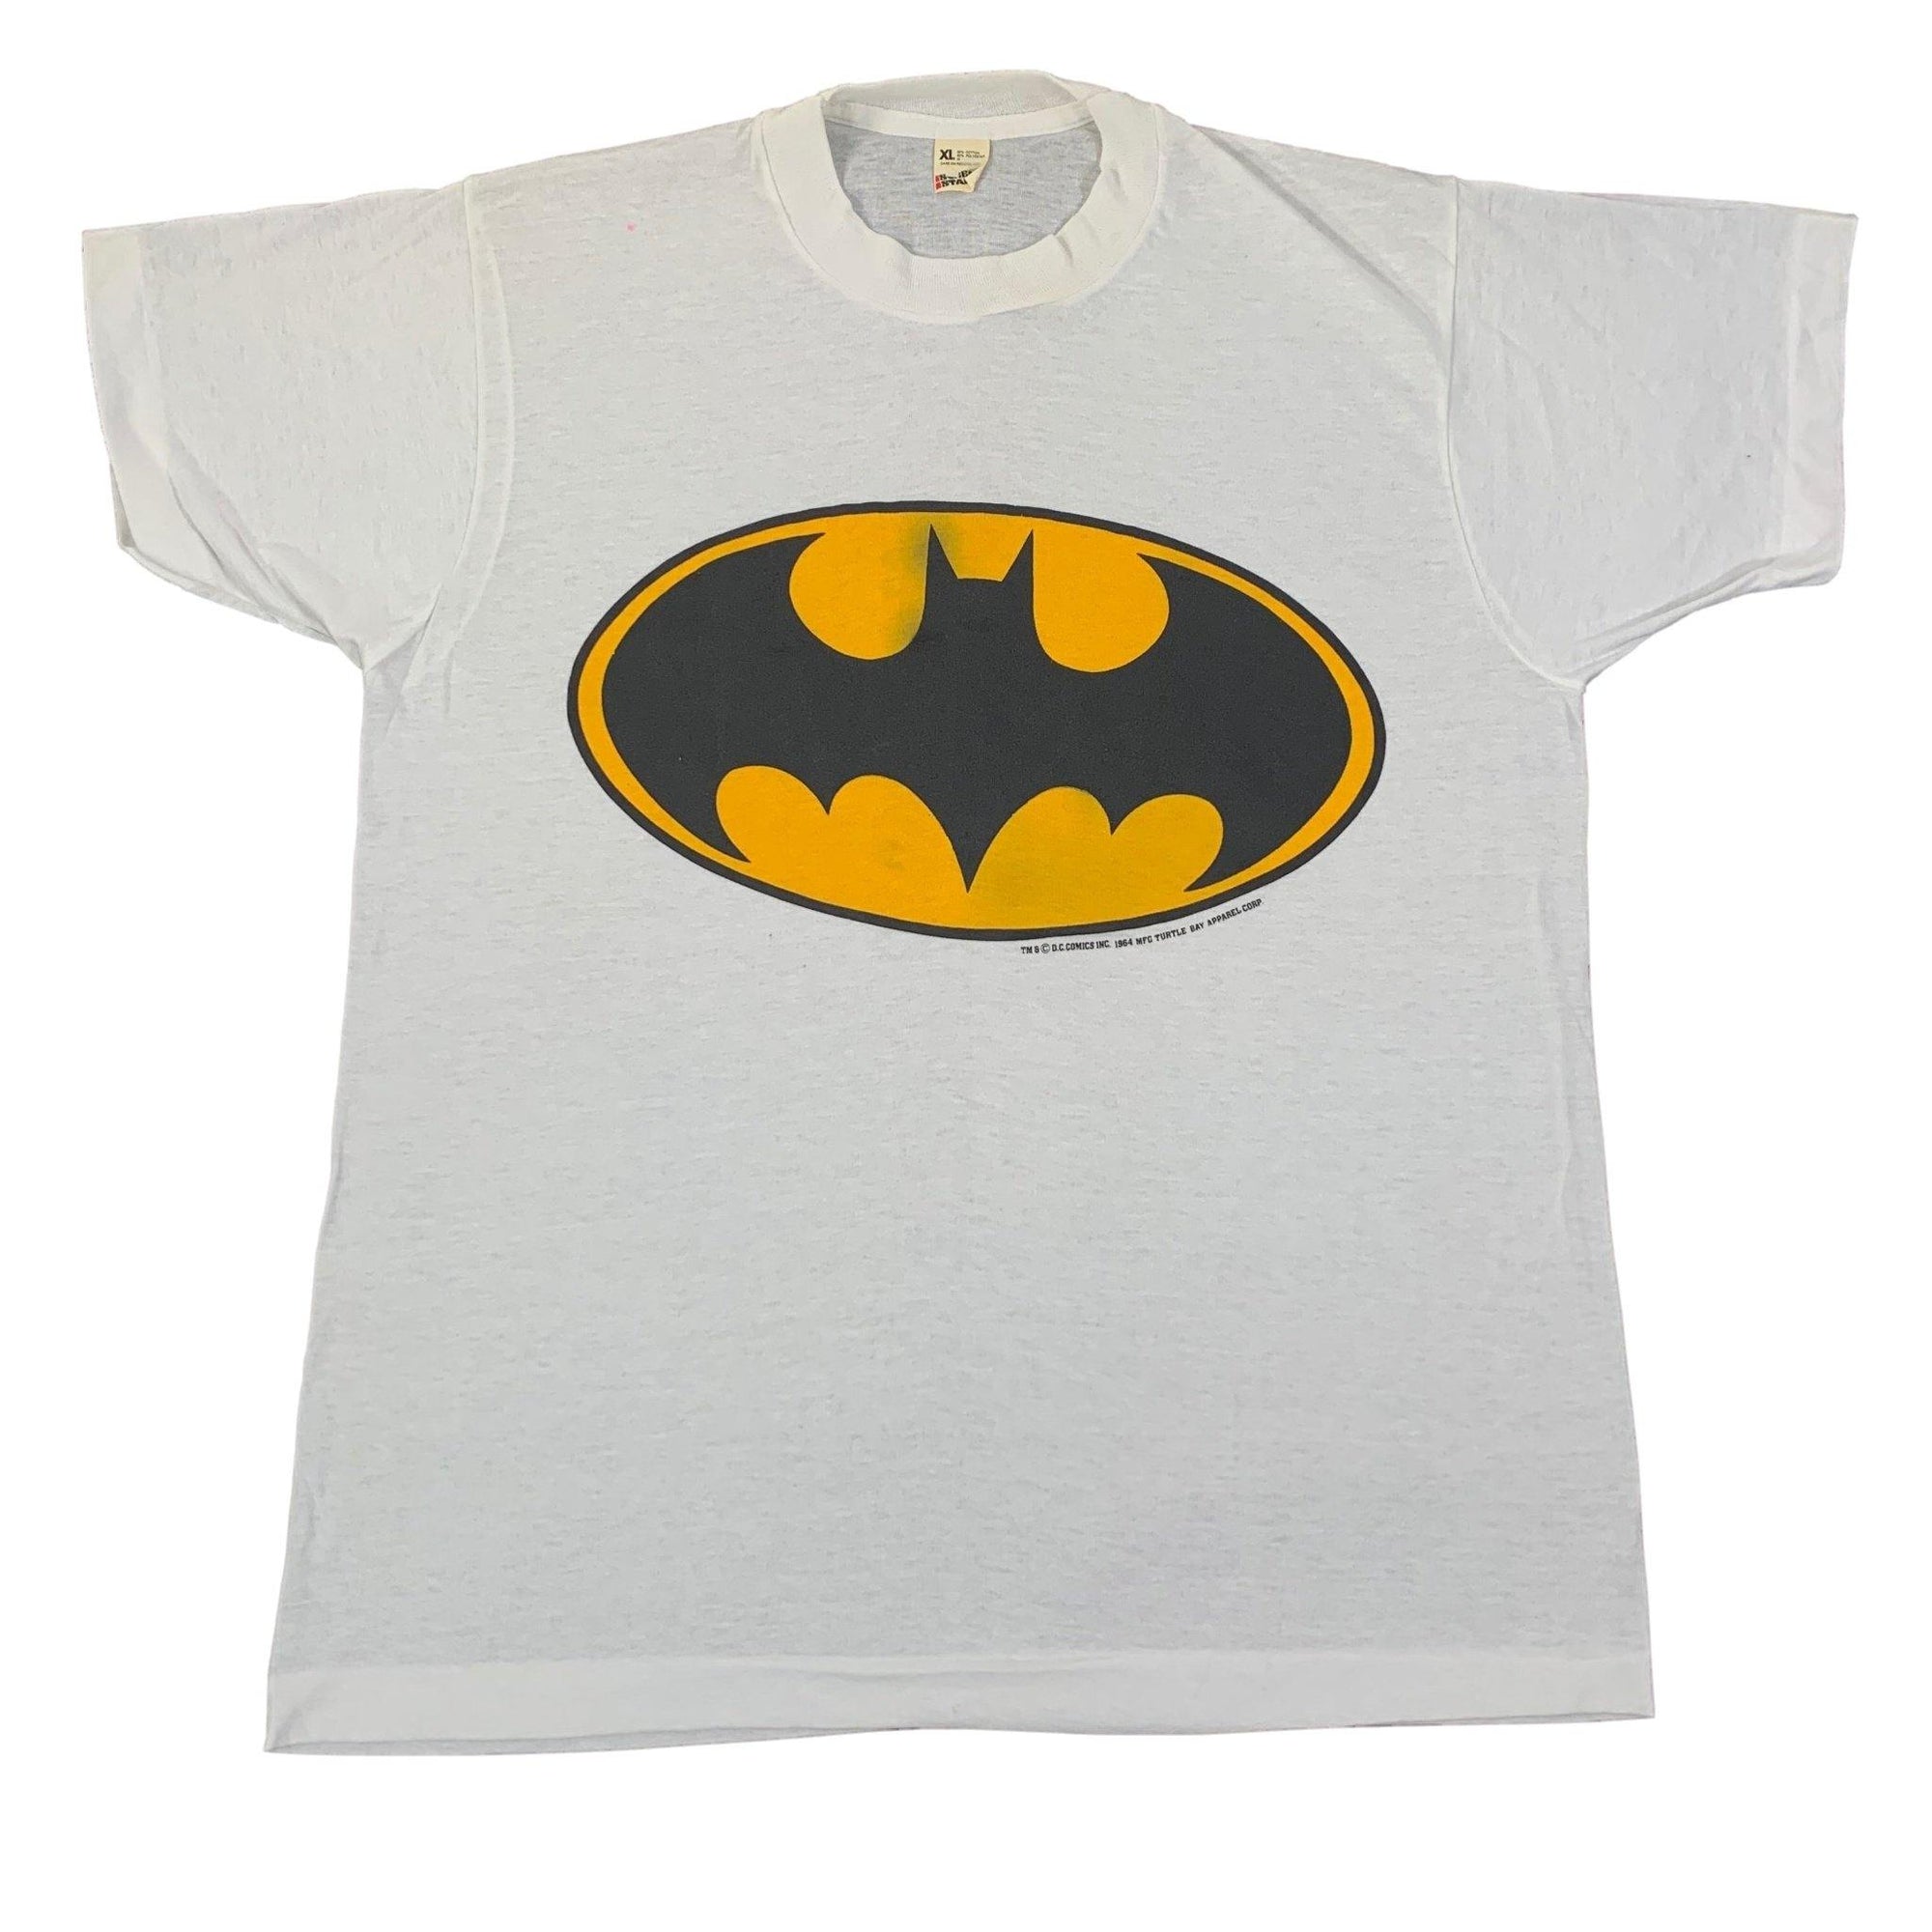 Vintage Batman "DC Comics" T-Shirt - jointcustodydc